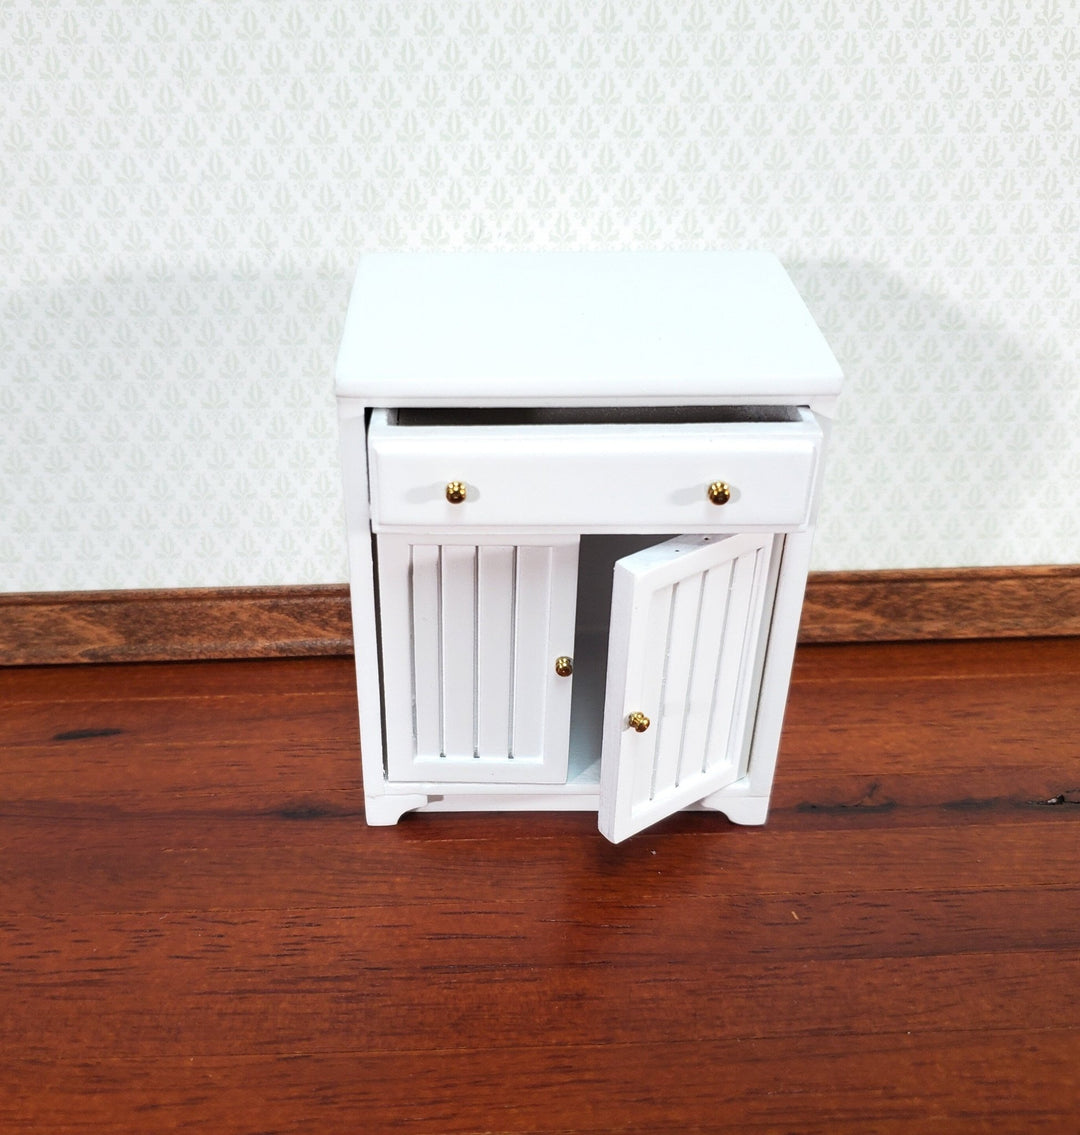 JBM Dollhouse Lower Kitchen Cabinet in White 1:12 Scale Miniature Cupboard - Miniature Crush